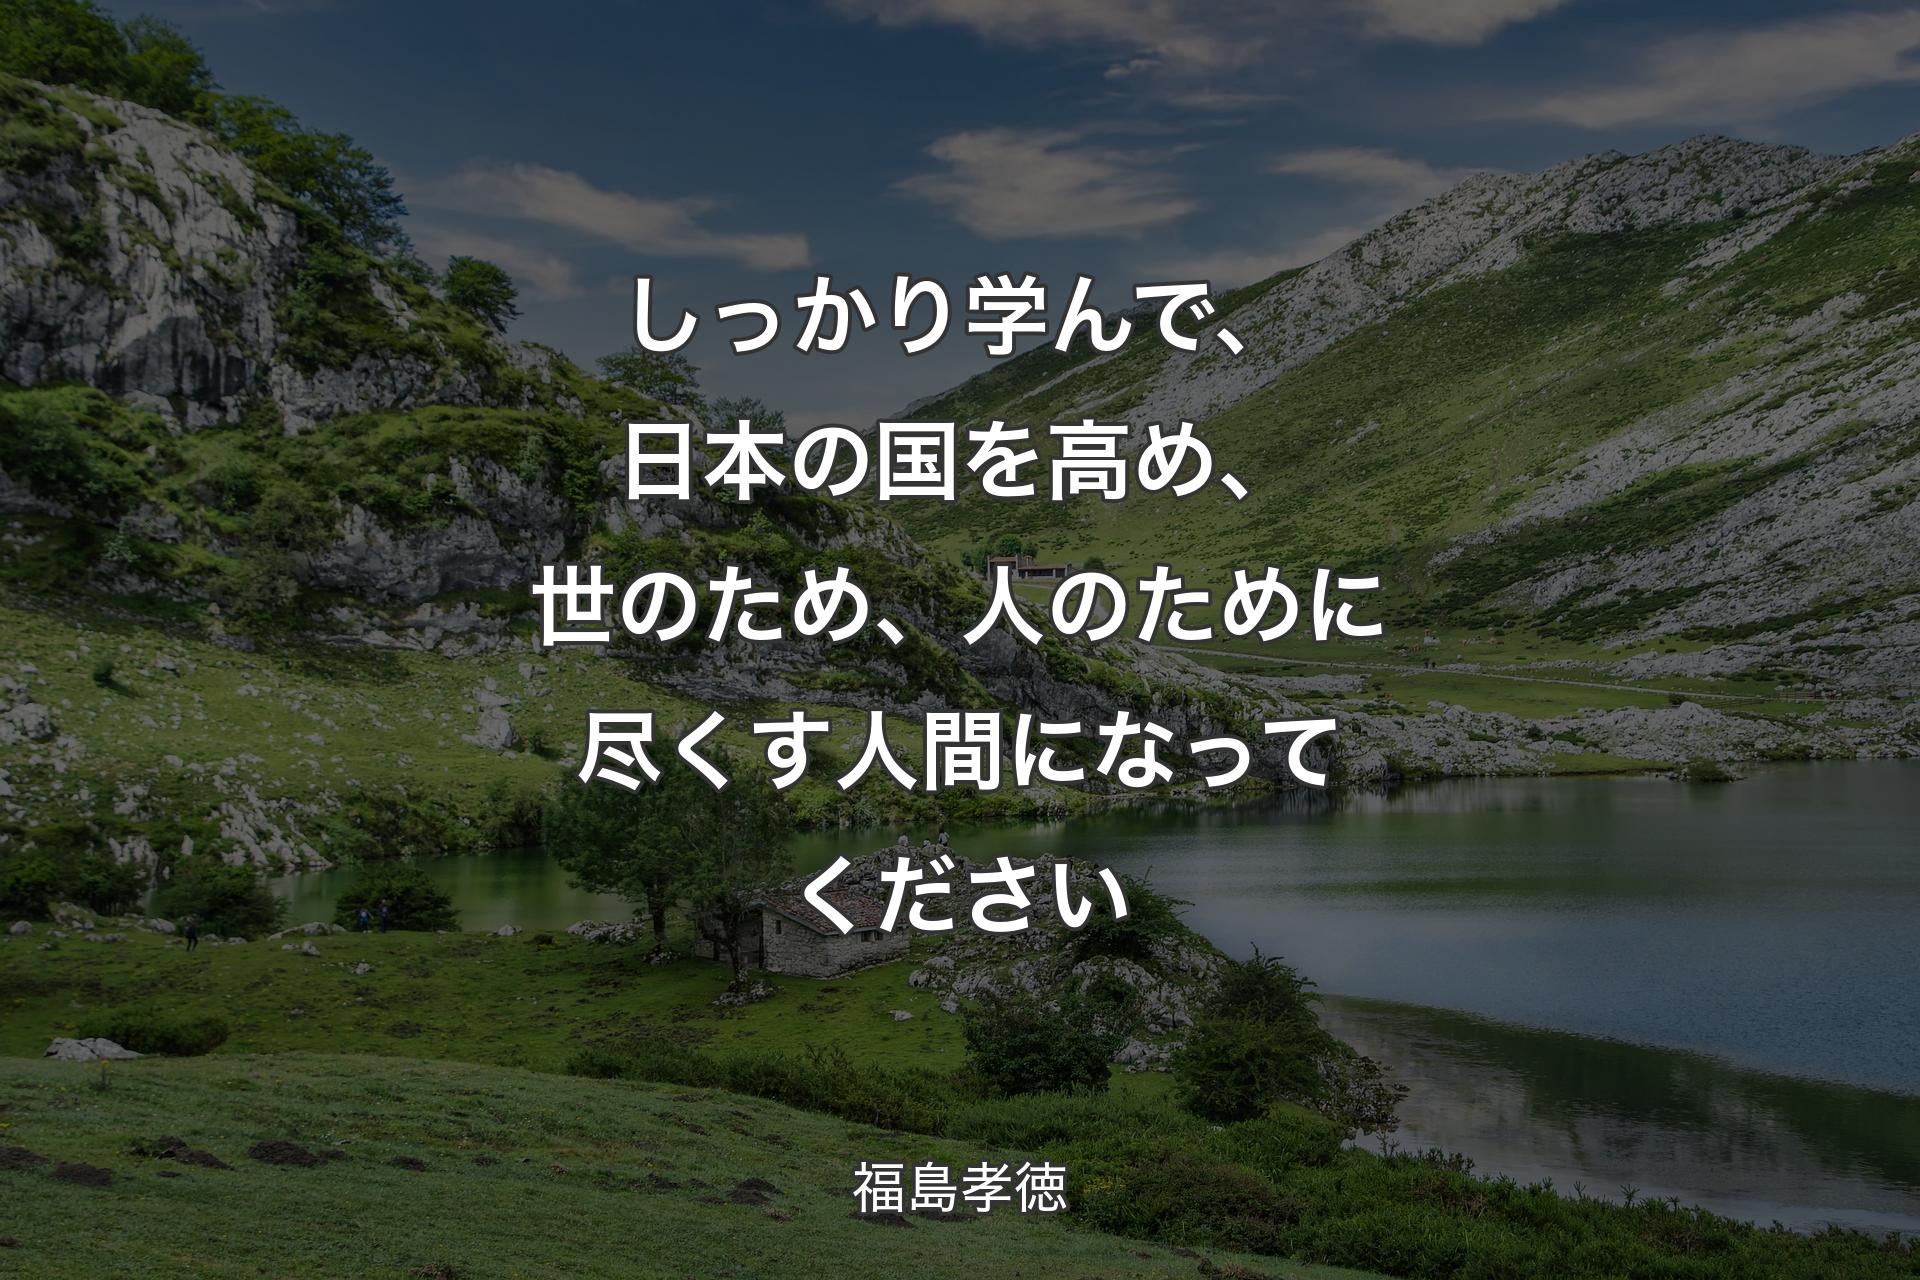 【背景1】しっかり学んで、日本の国を高め、世のため、人のために尽くす人間になってください - 福島孝徳